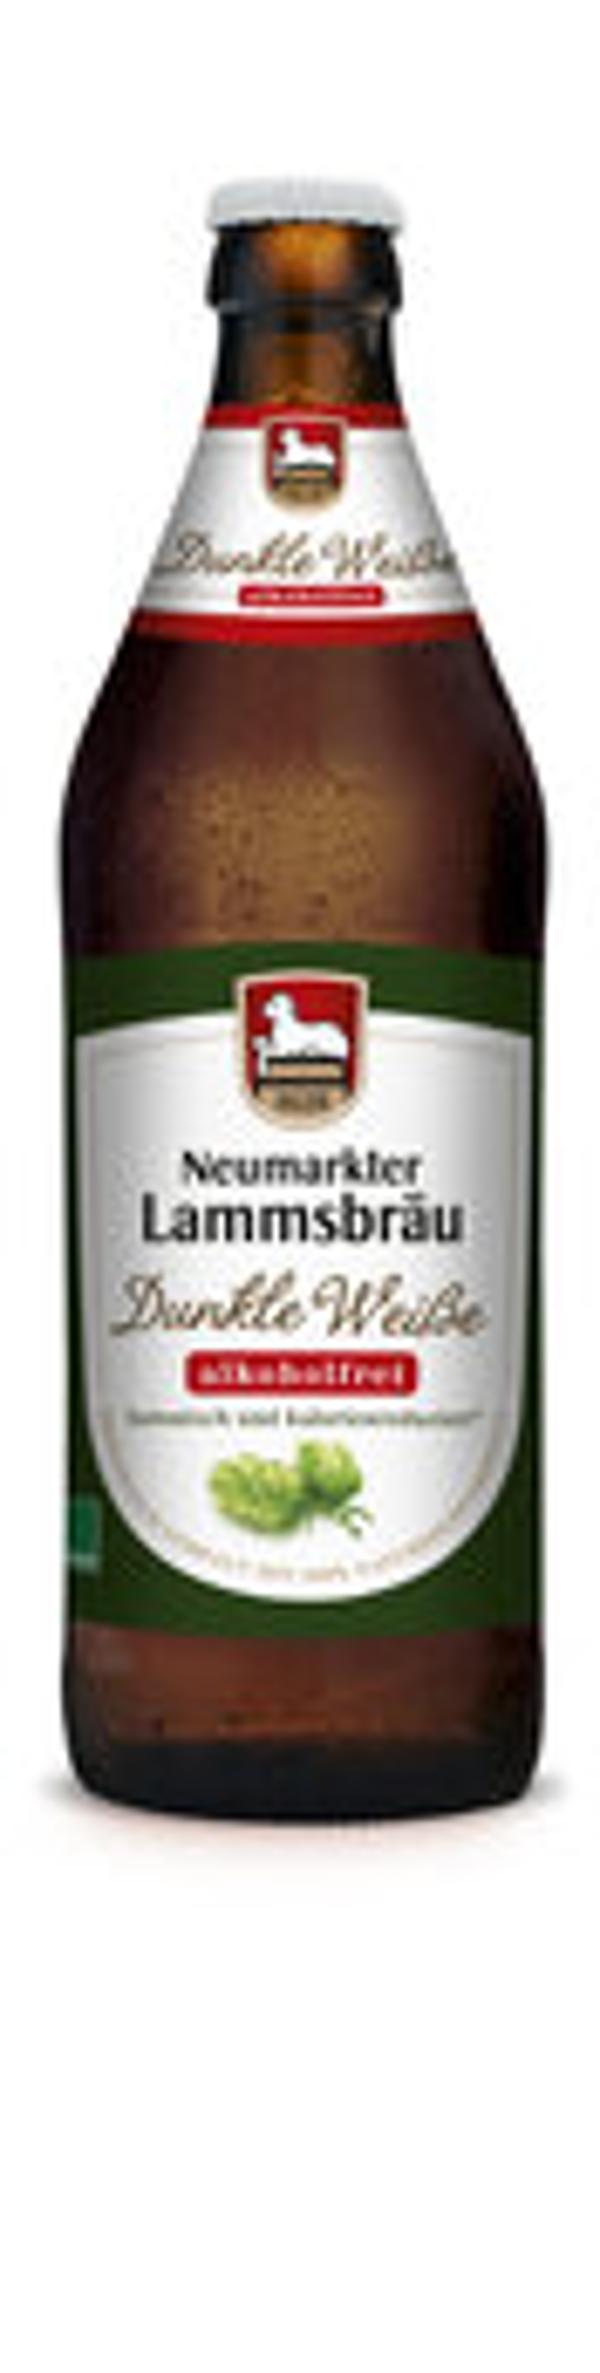 Produktbild von Lammsbräu Hefeweizen dunkel alkoholfrei 0,5l